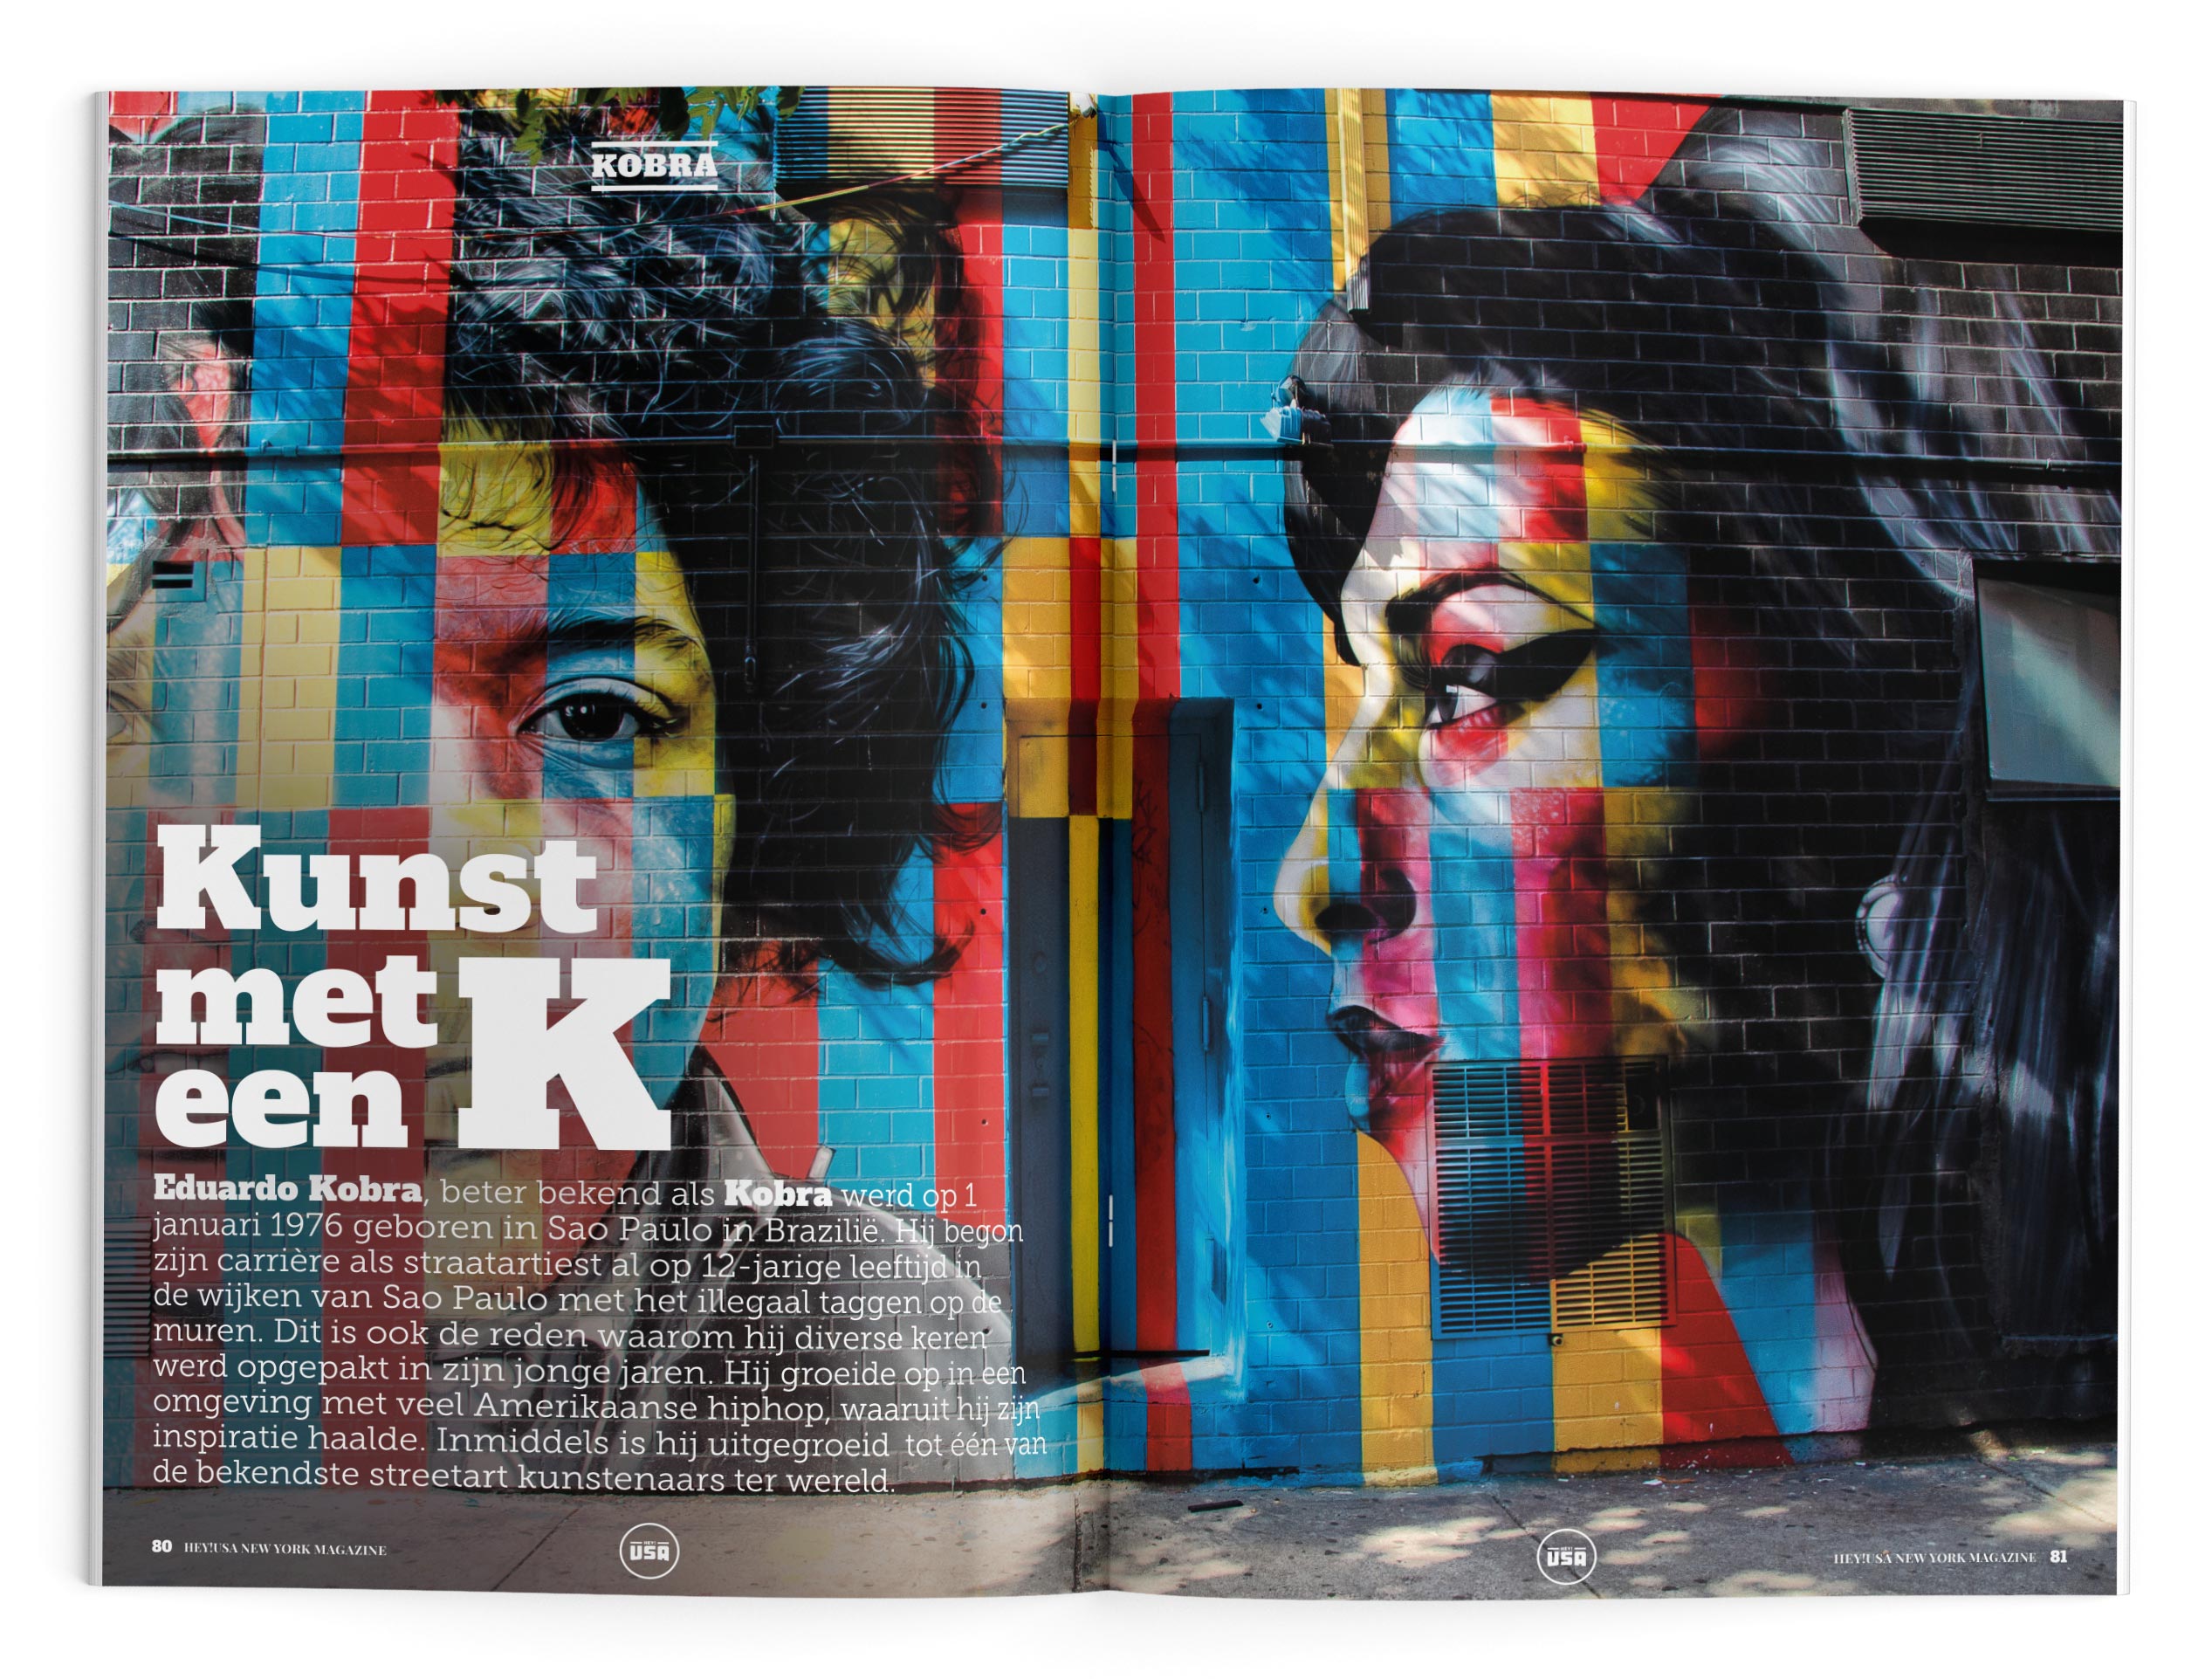 Lees meer over street art artiest Kobra in het New York magazine van Hey!USA